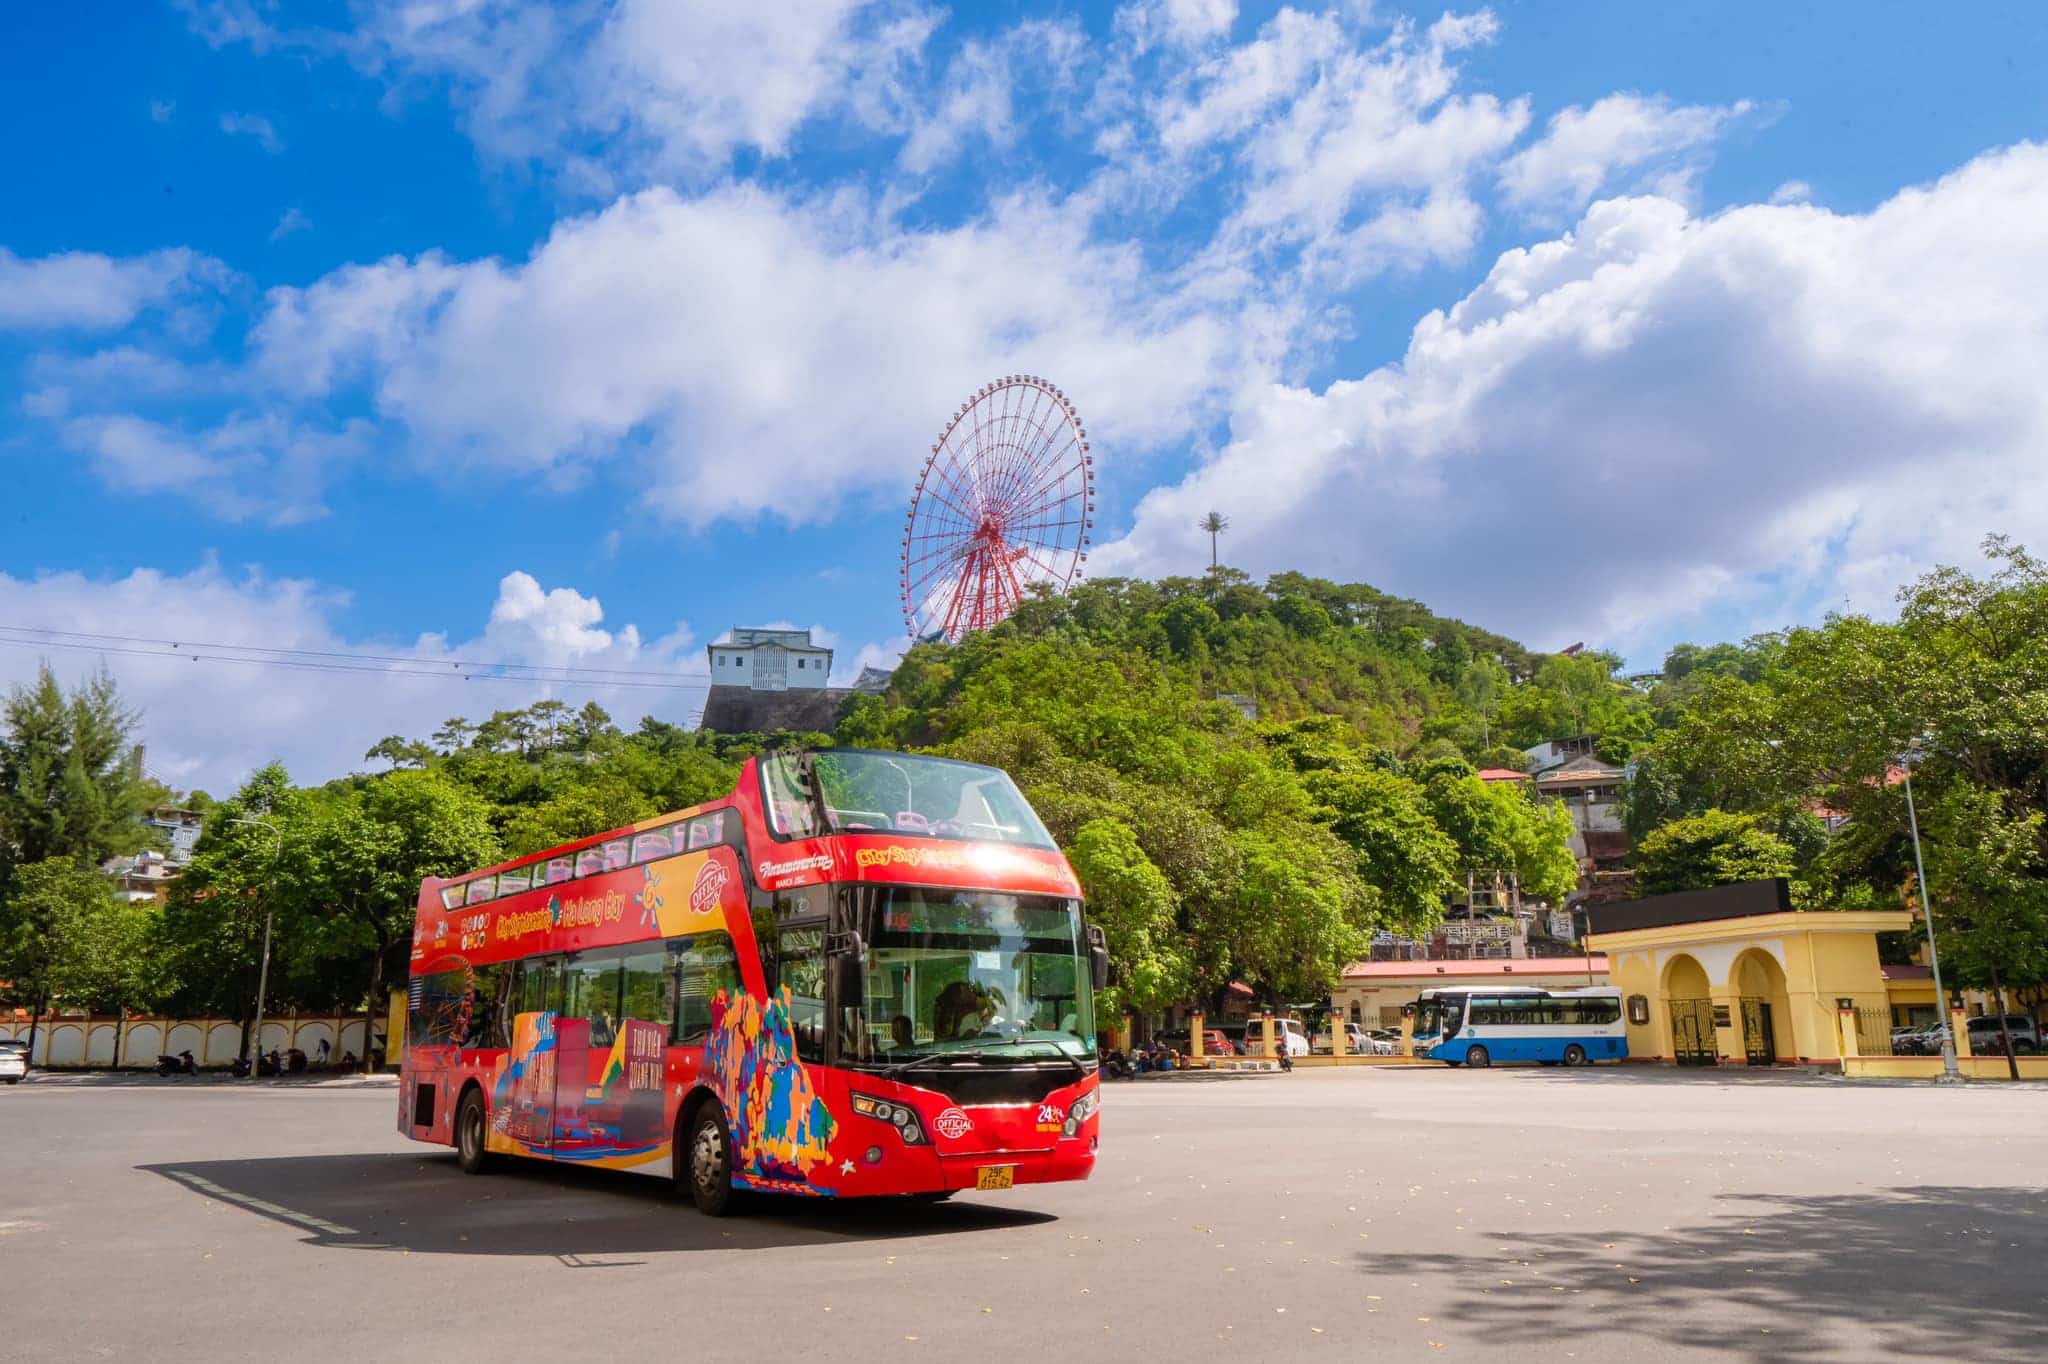 Giá vé dịch vụ xe bus 2 tầng City Tour Hạ Long năm 2024